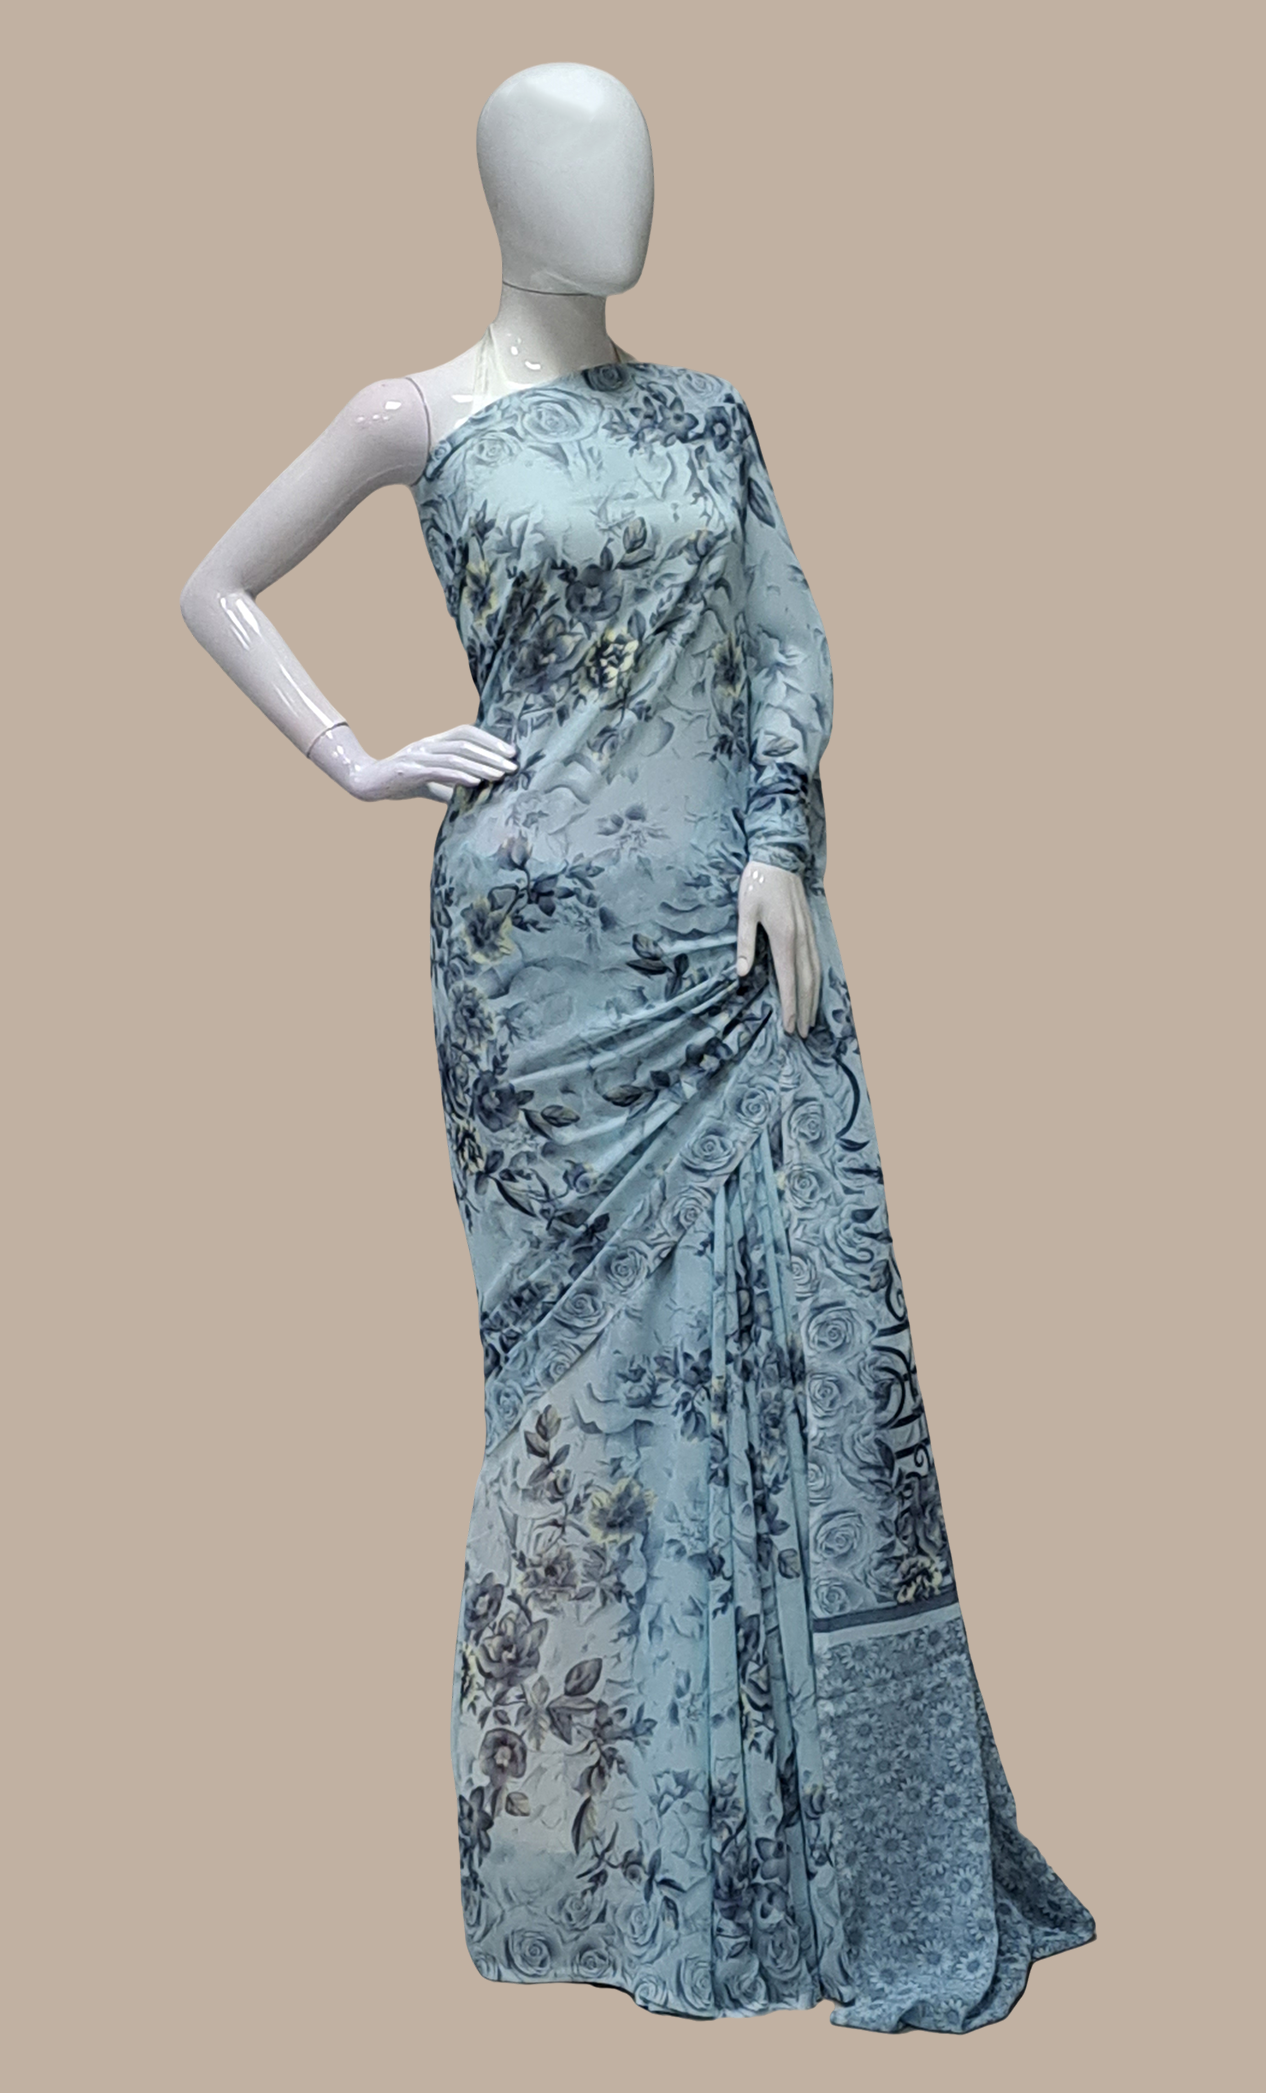 Powder Blue Floral Printed Sari